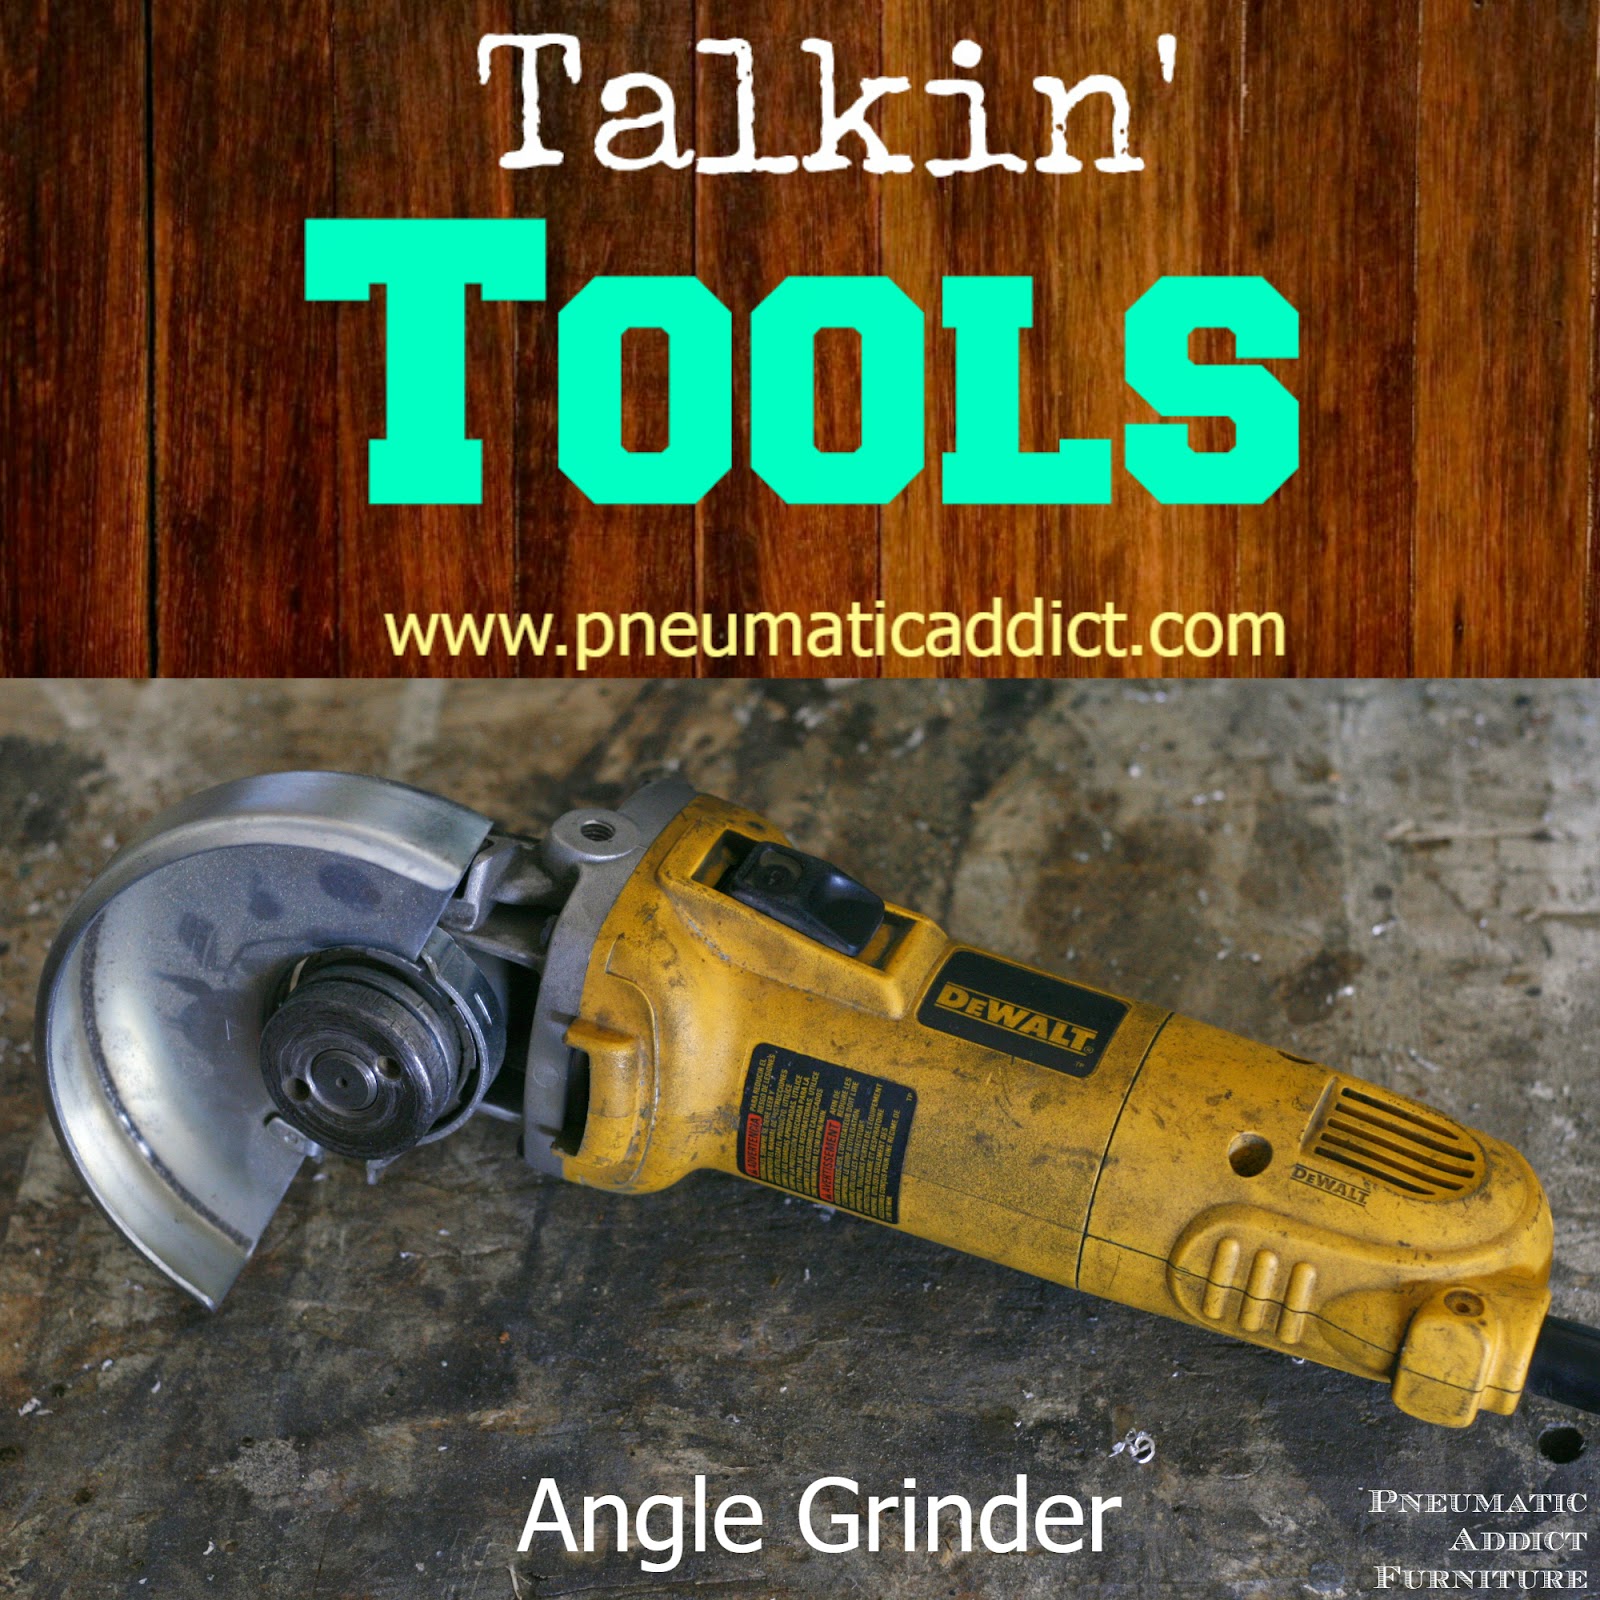 https://2.bp.blogspot.com/-pUWa9Jddqog/VA0QarnwltI/AAAAAAAAFVQ/btQlzEWX31M/s1600/Talkin-tools-angle-grinder.jpg